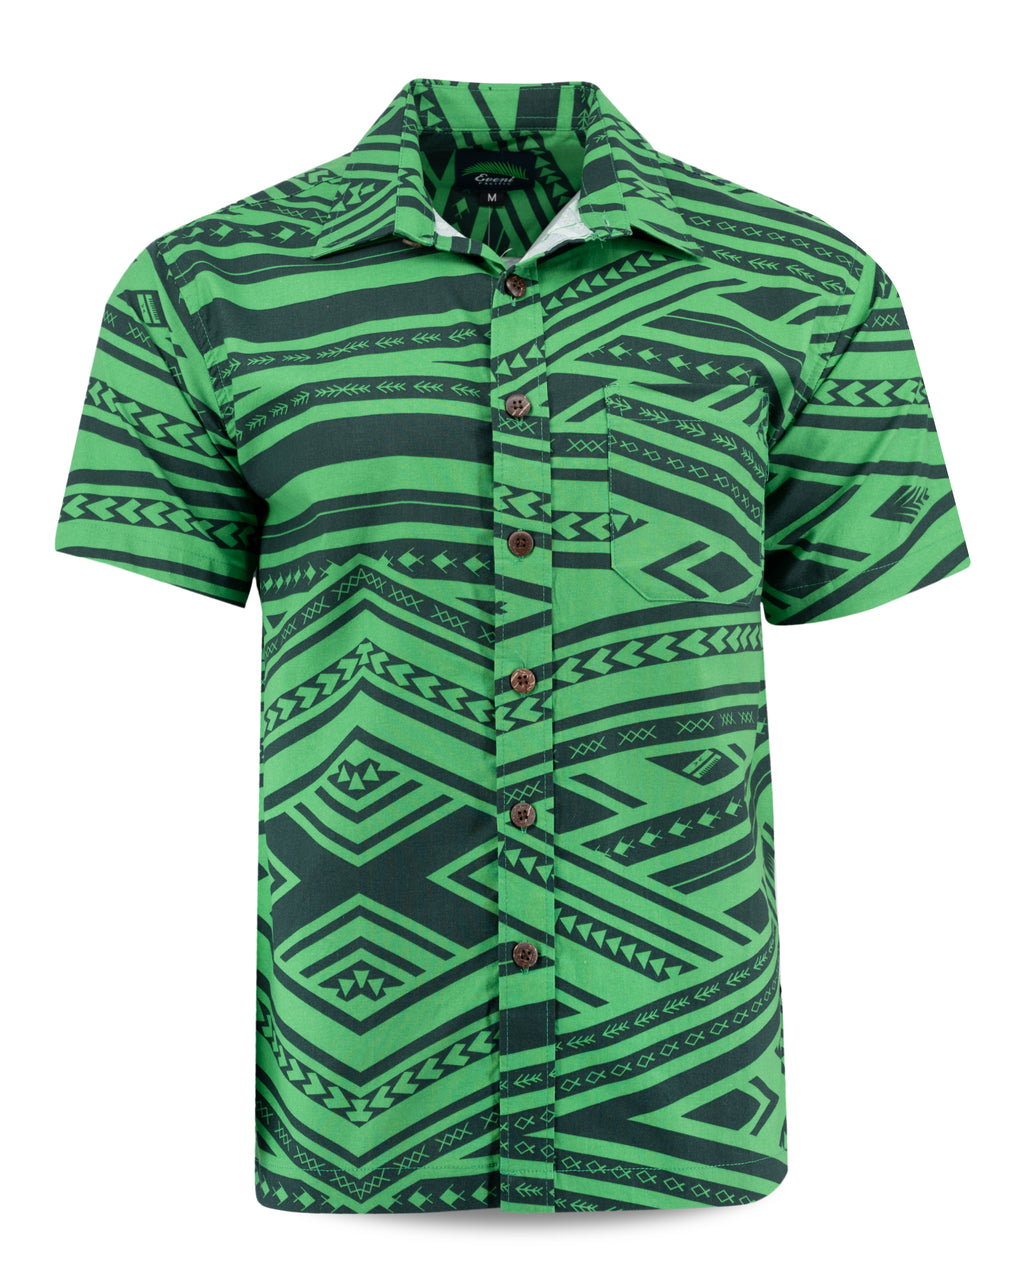 Eveni Pacific Men's Classic Shirt - Cowboy Green